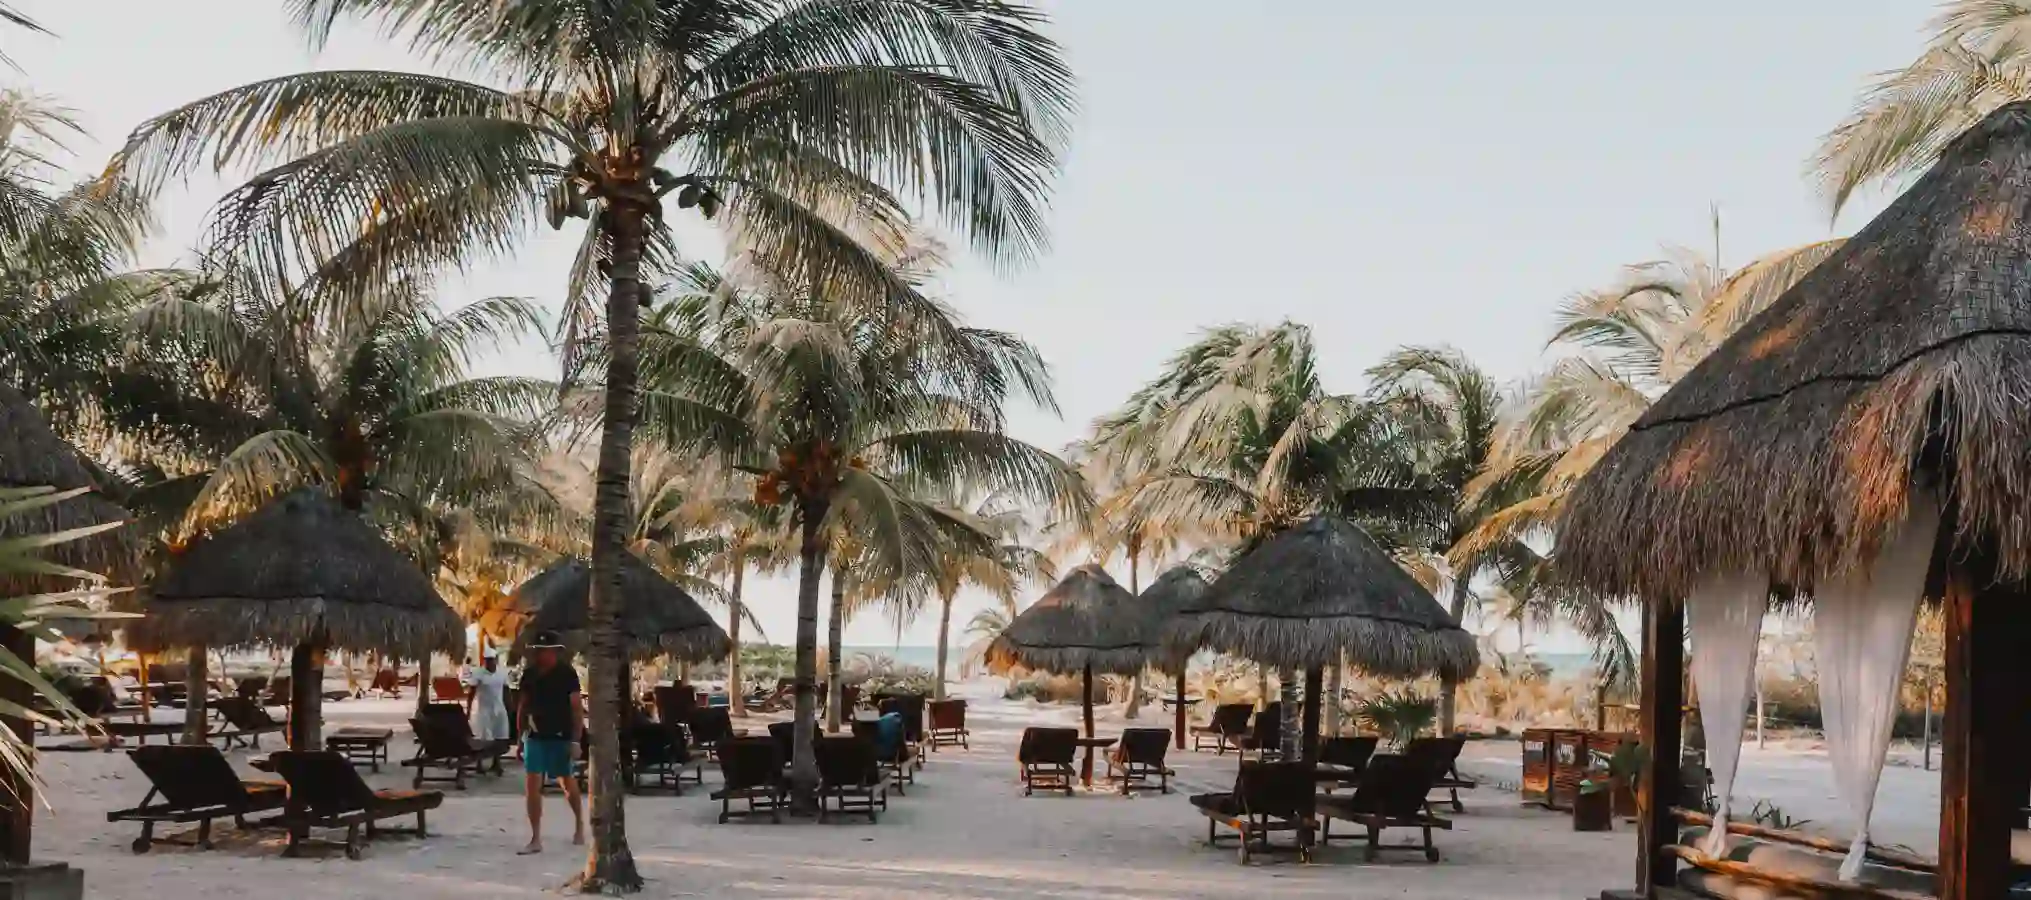 Plaża z palmami i krzesłami